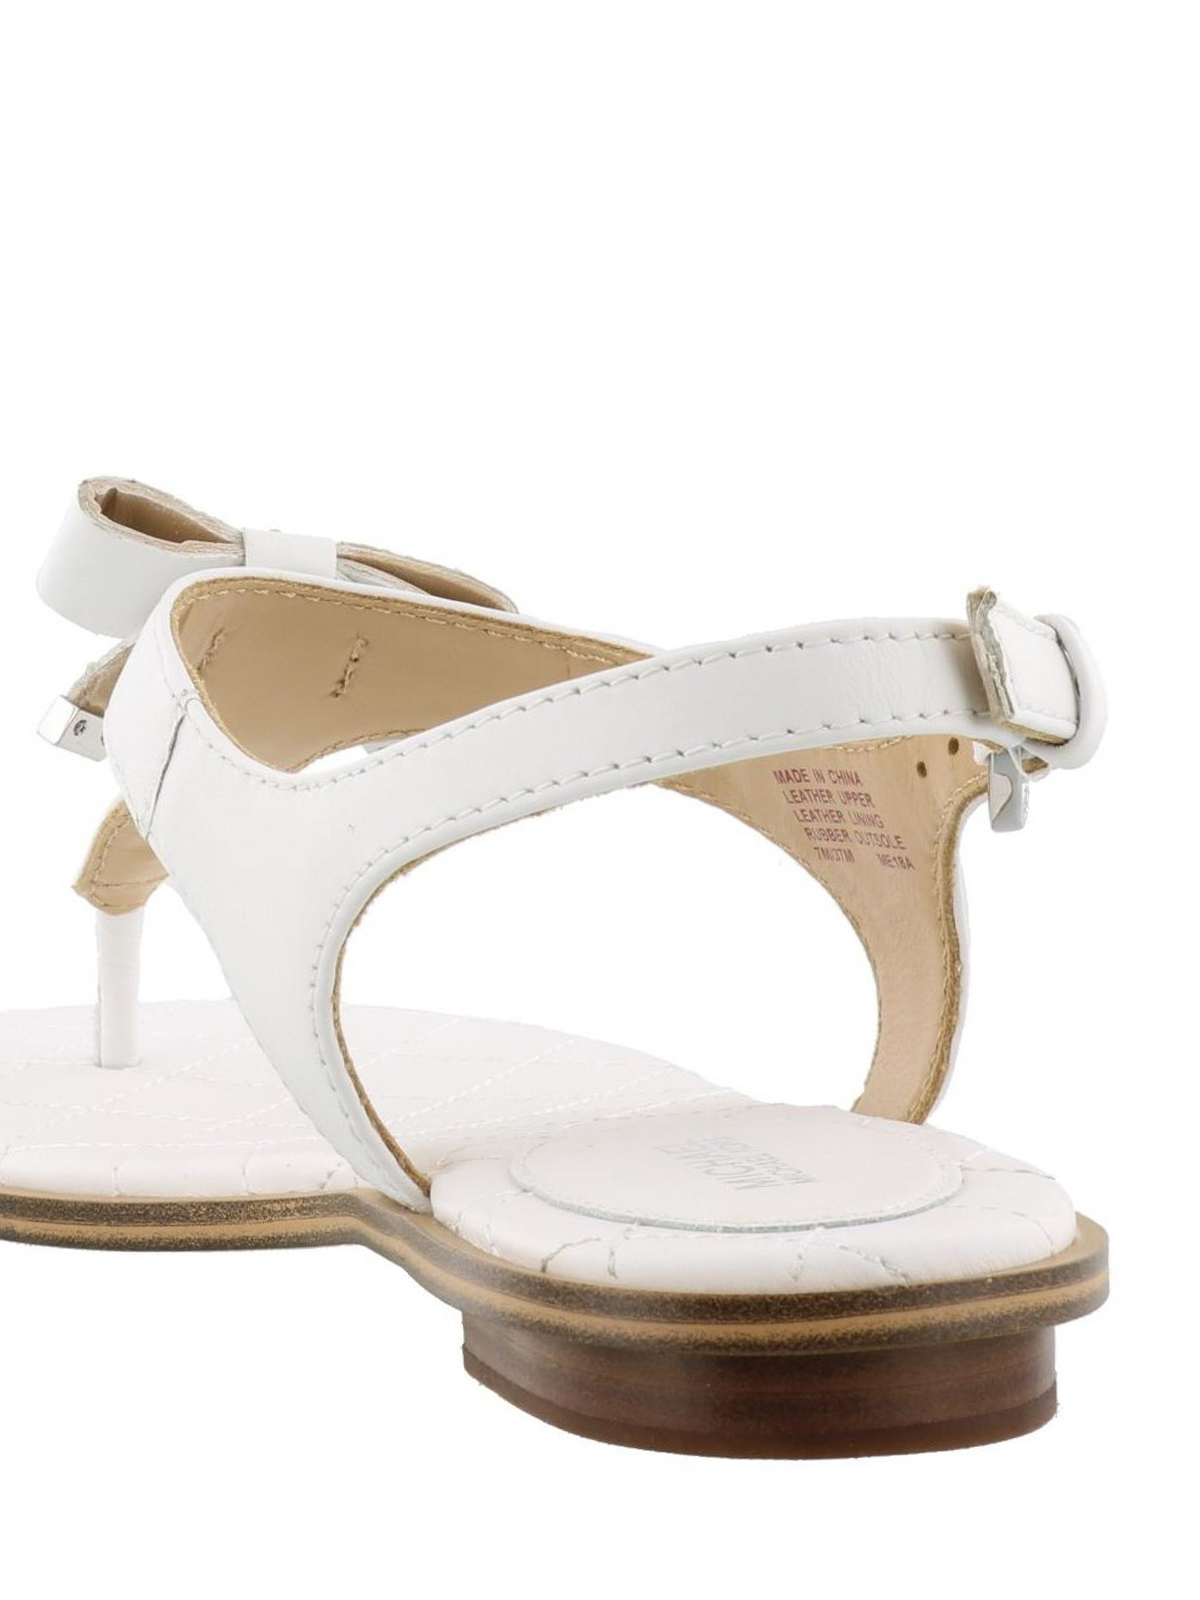 Optic white Jules Mid leather sandals  Lacroix espace boutique inc